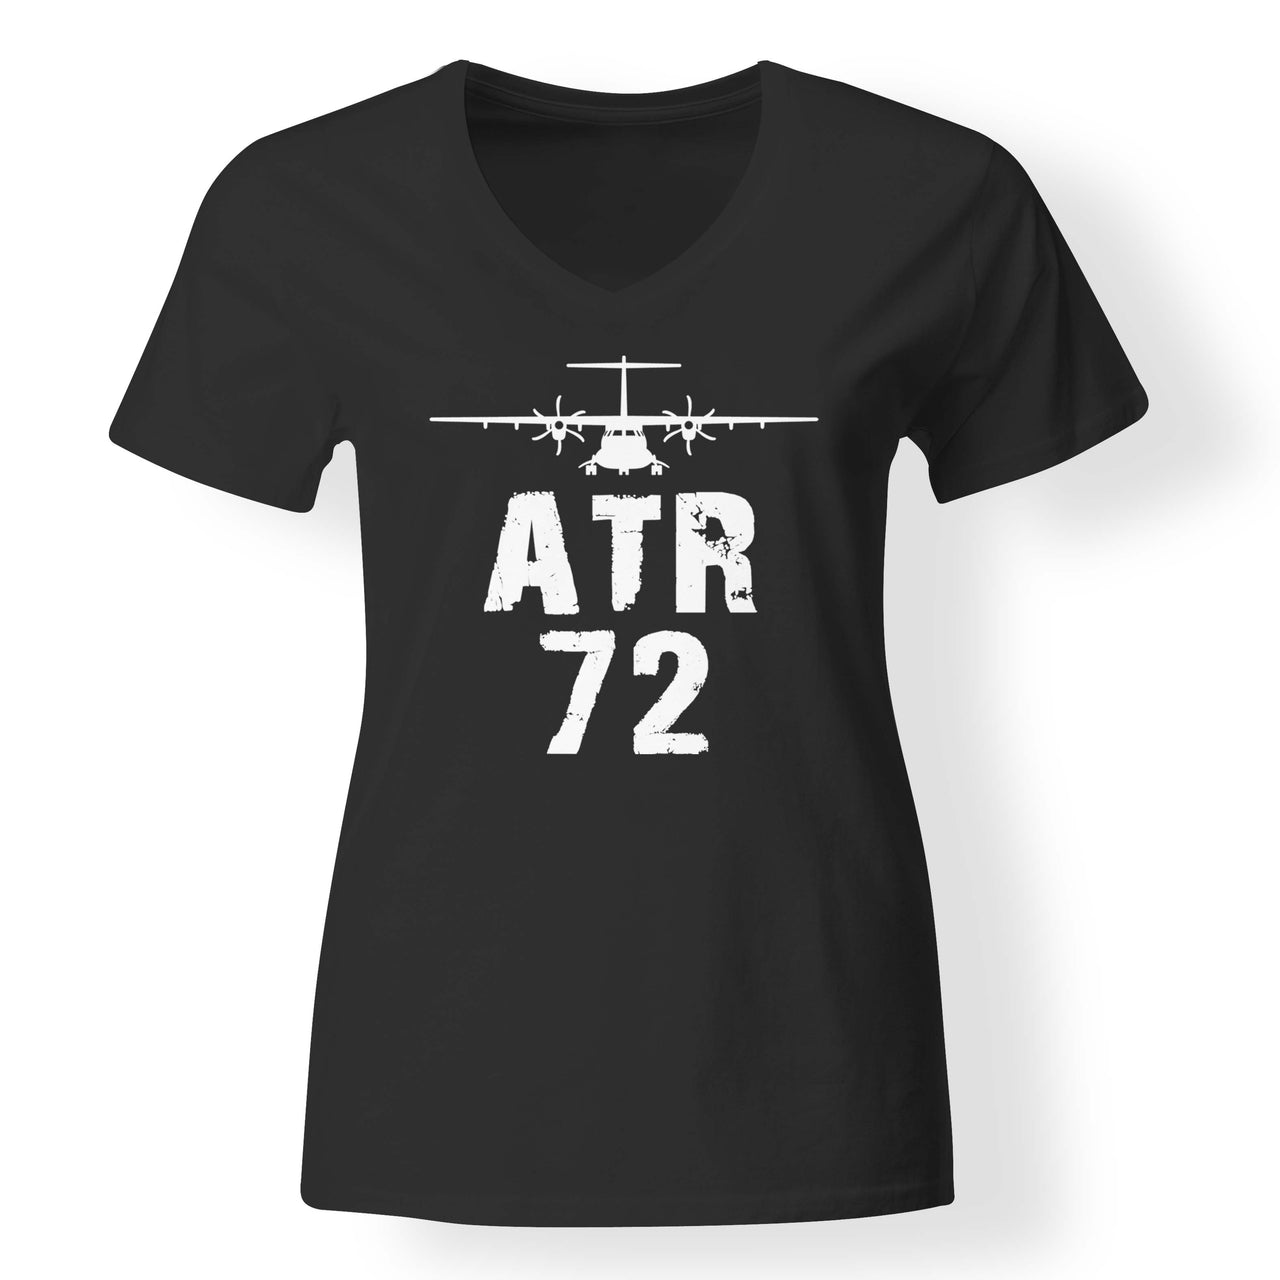 ATR-72 & Plane Designed V-Neck T-Shirts